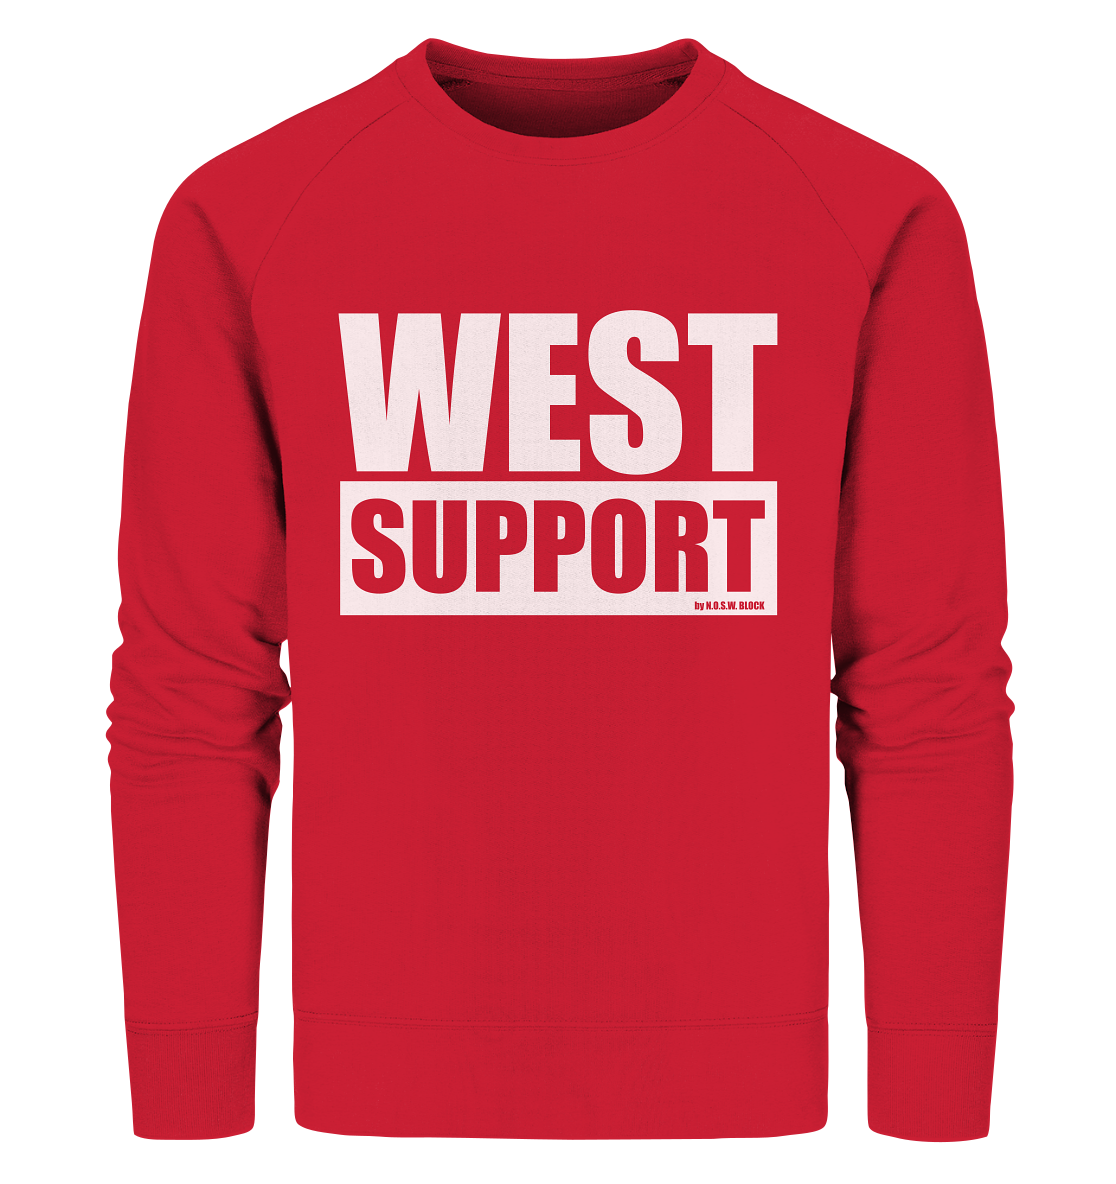 N.O.S.W. BLOCK Fanblock Sweater "WEST SUPPORT" Männer Organic Sweatshirt rot